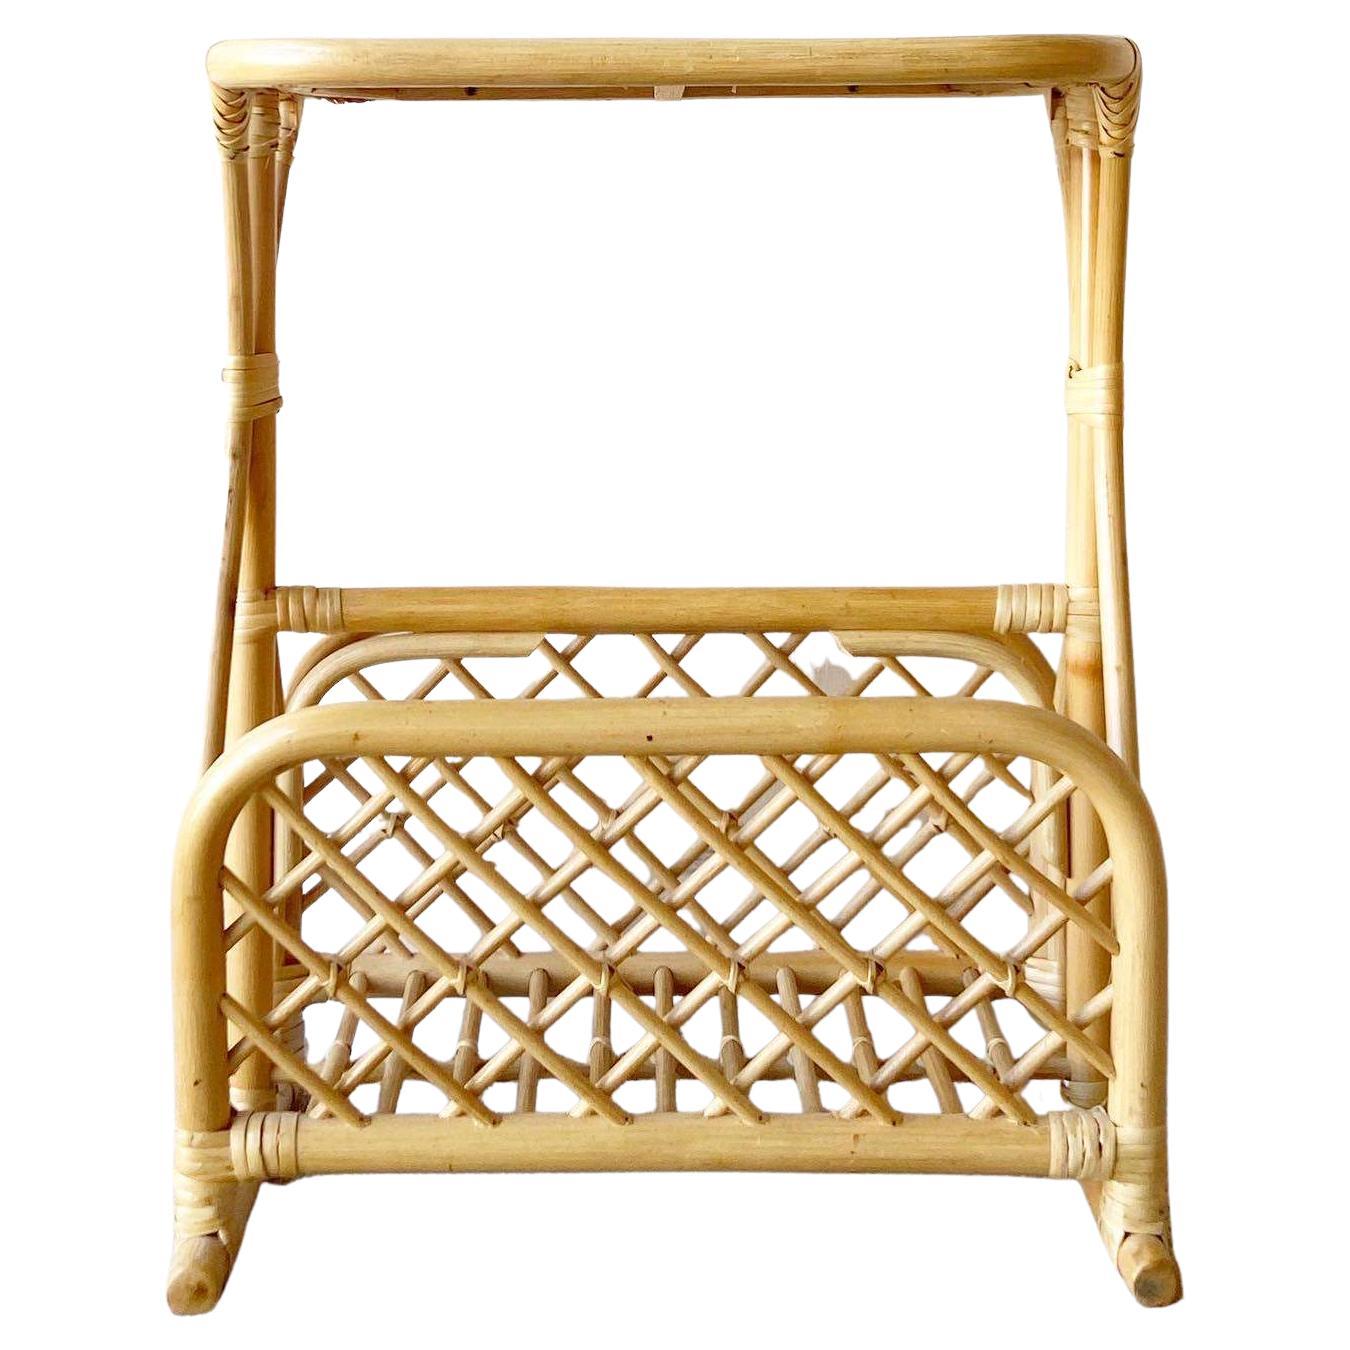 Außergewöhnlicher Vintage Boho Stuhl Bambus Rattan Zeitschriftenständer / Beistelltisch. Er hat ein wunderschönes, skulpturales Design mit blondem Finish und einem Geflechtdach.
